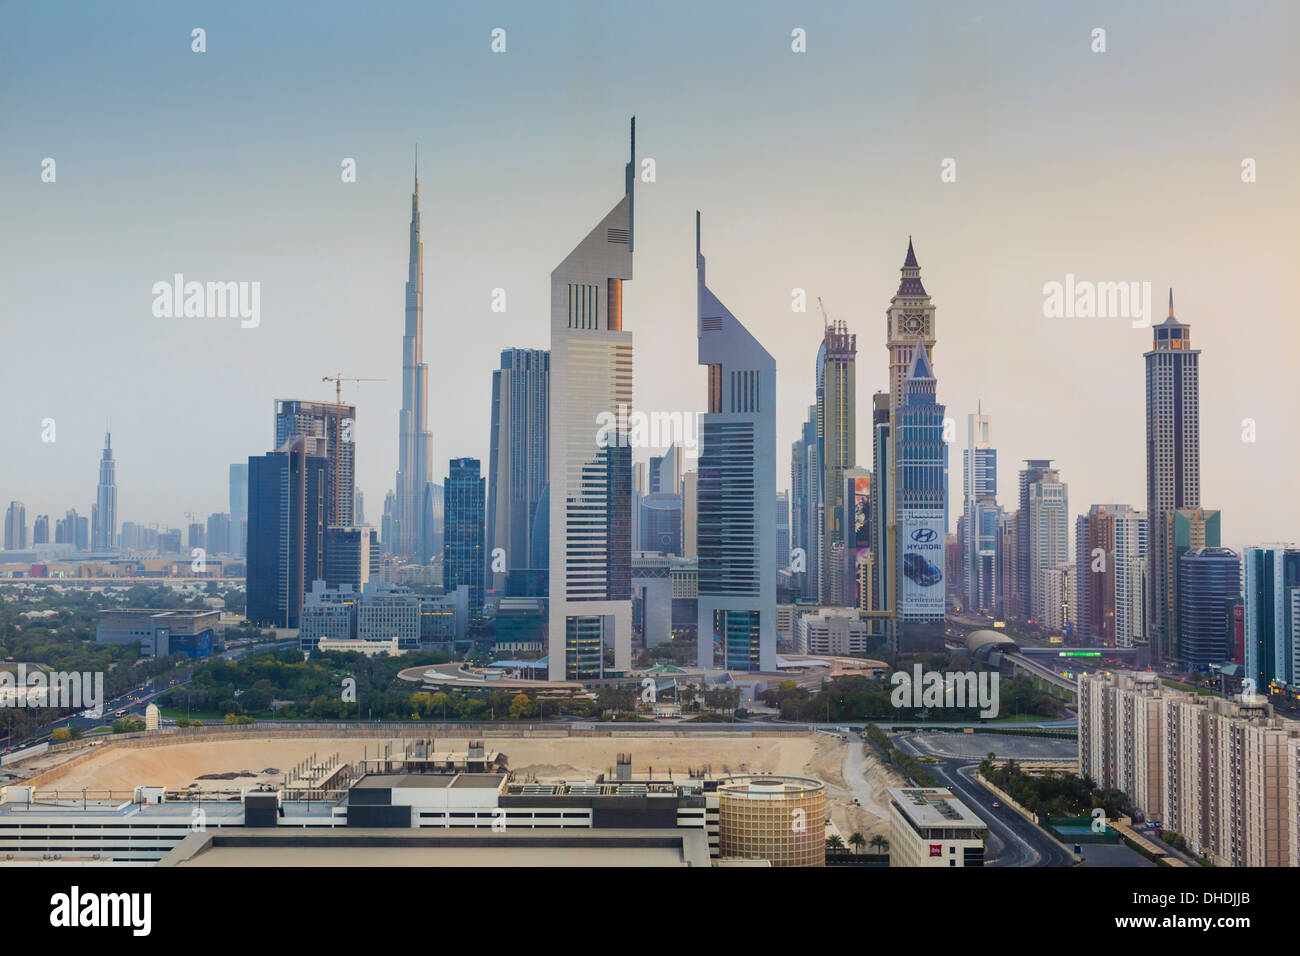 Cityscape Dubaï avec Emirates Towers et Burj Khalifa, Dubai, Émirats arabes unis, Moyen Orient Banque D'Images